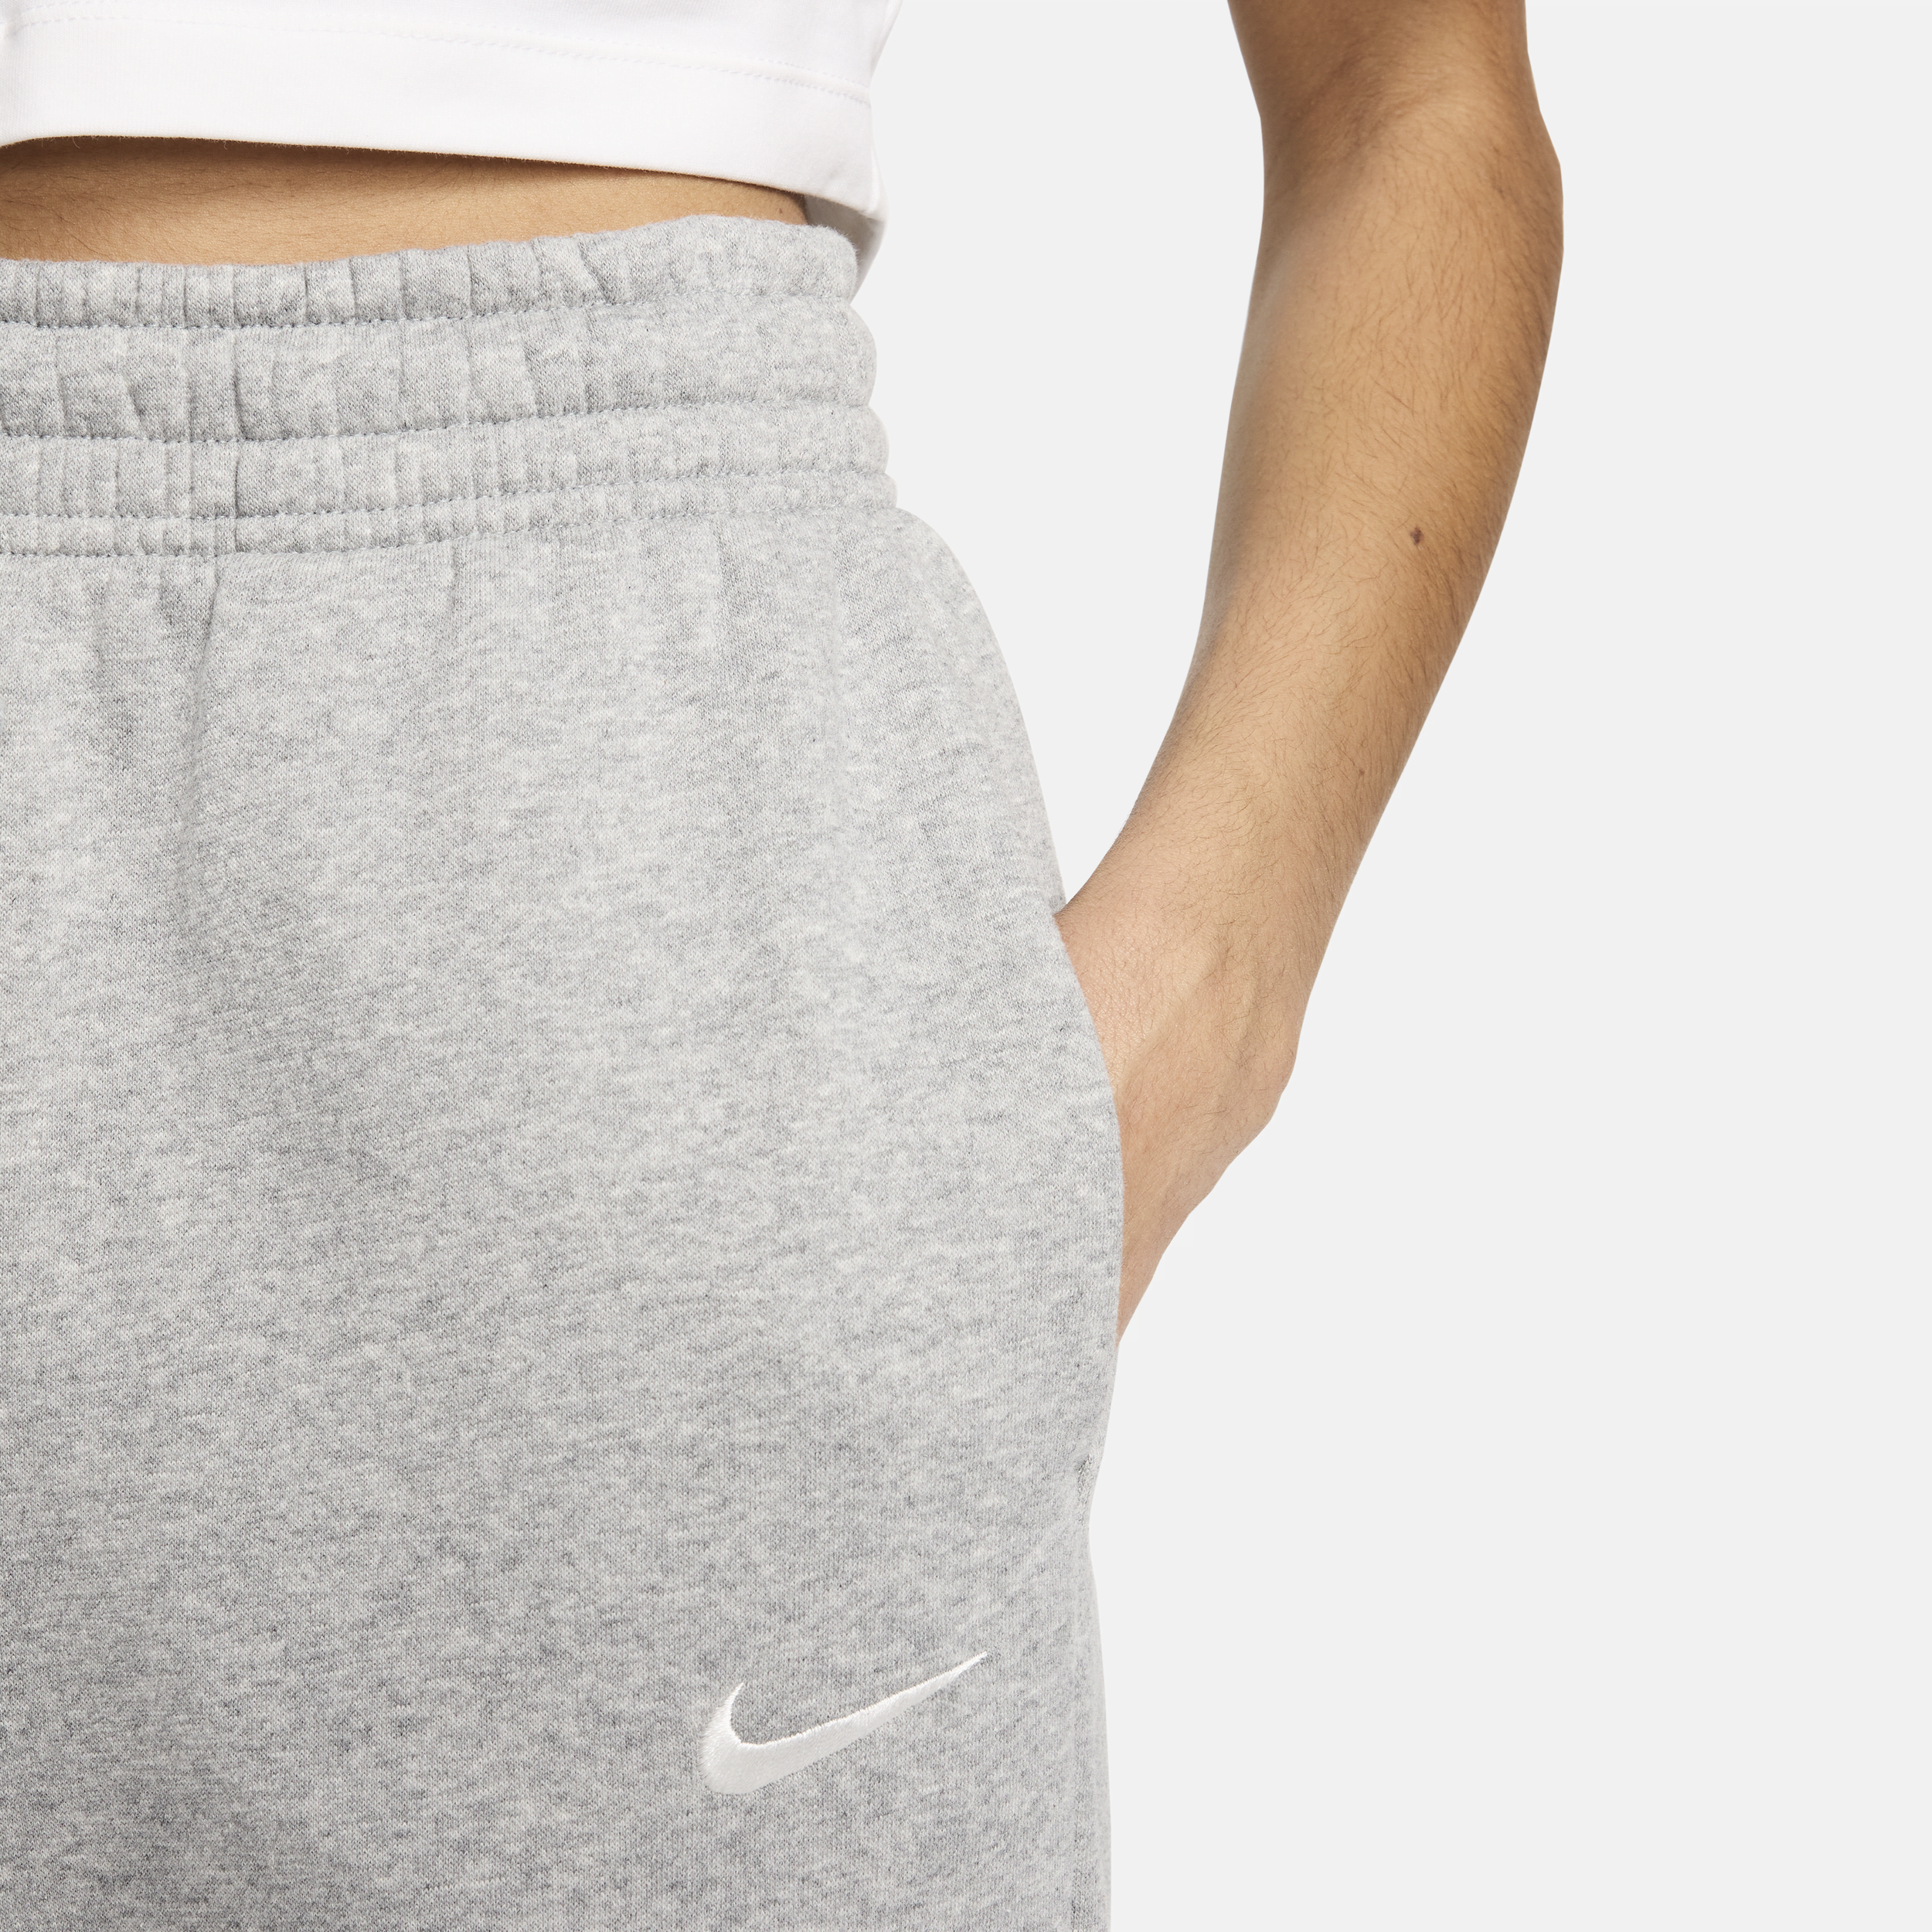 Nike Sportswear Phoenix Fleece Oversized joggingbroek met hoge taille voor dames Grijs